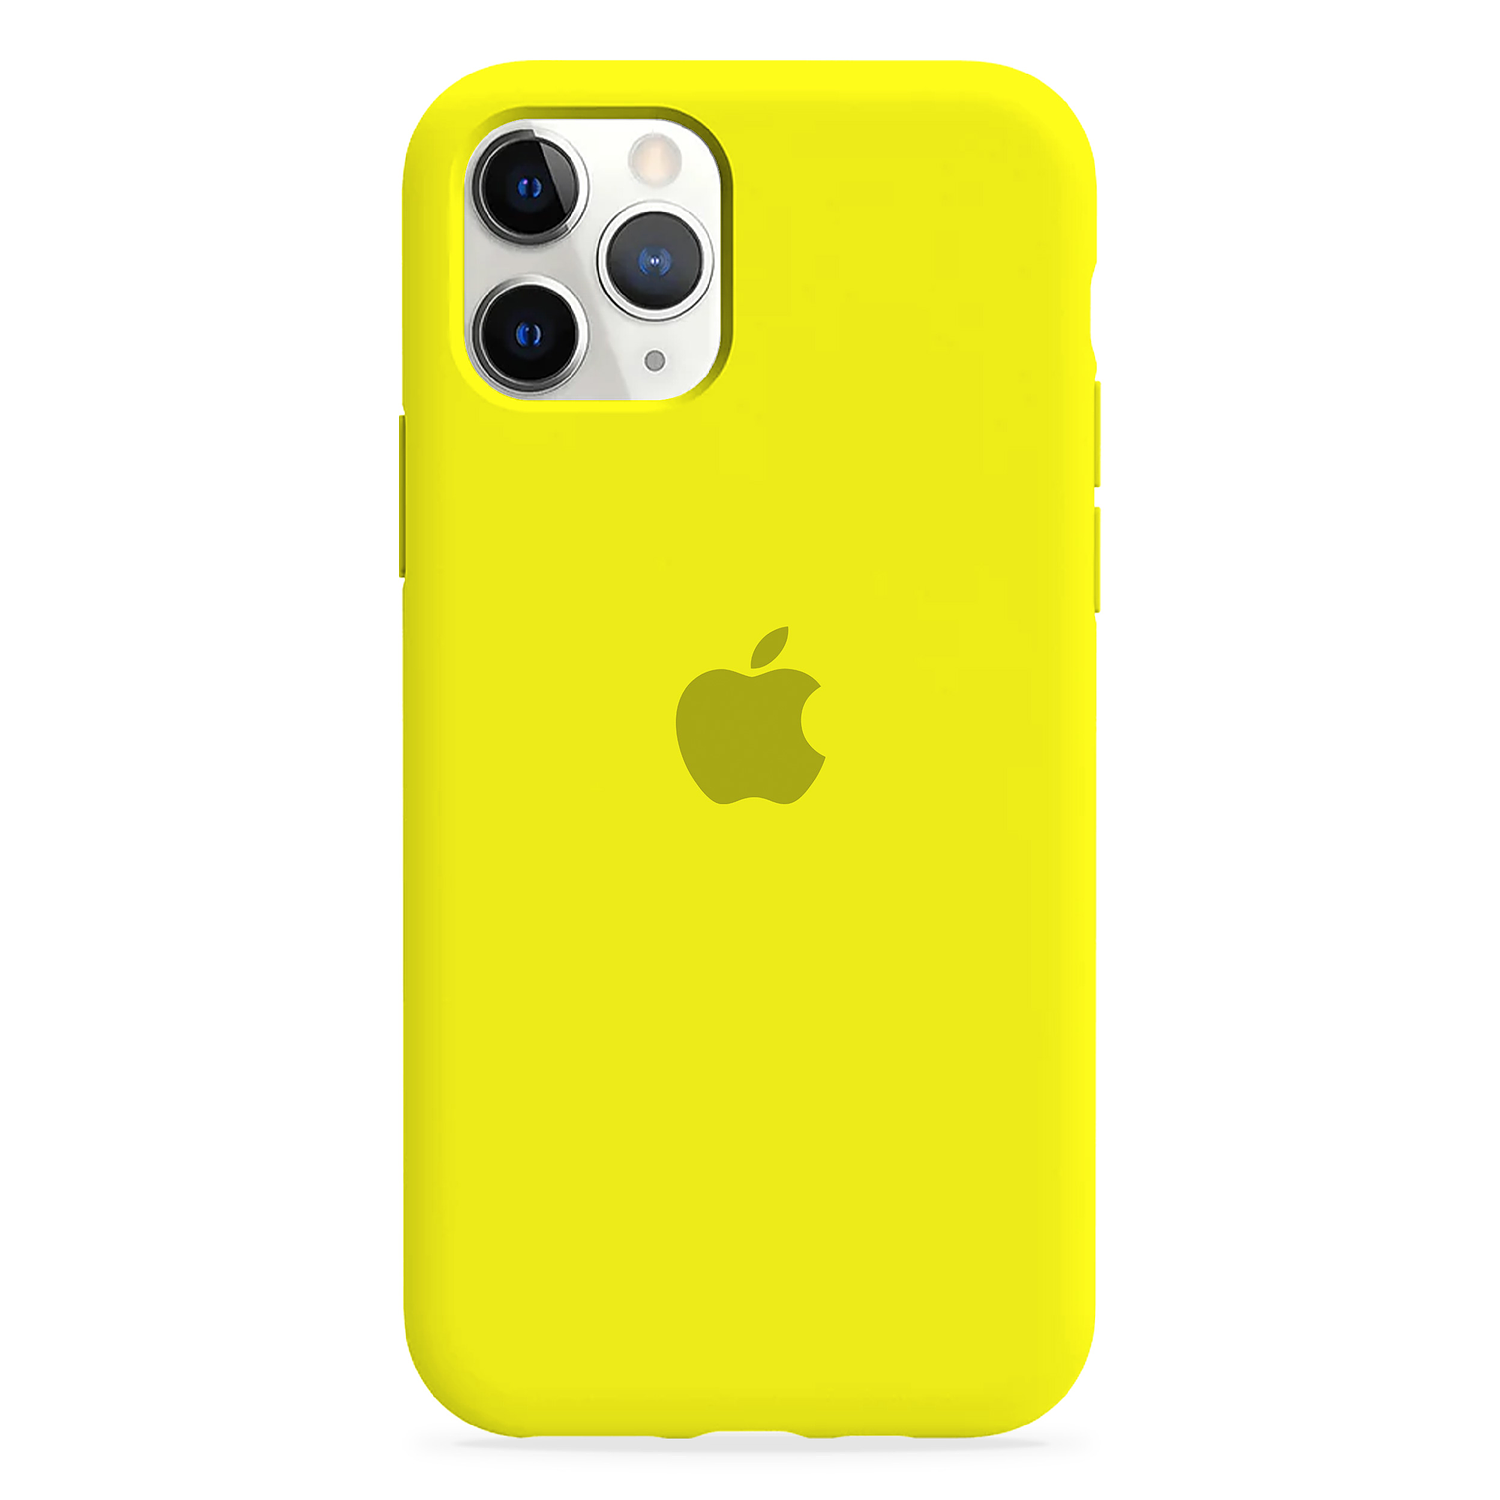 Carcasa de Silicona - iPhone 11 Pro Max 3